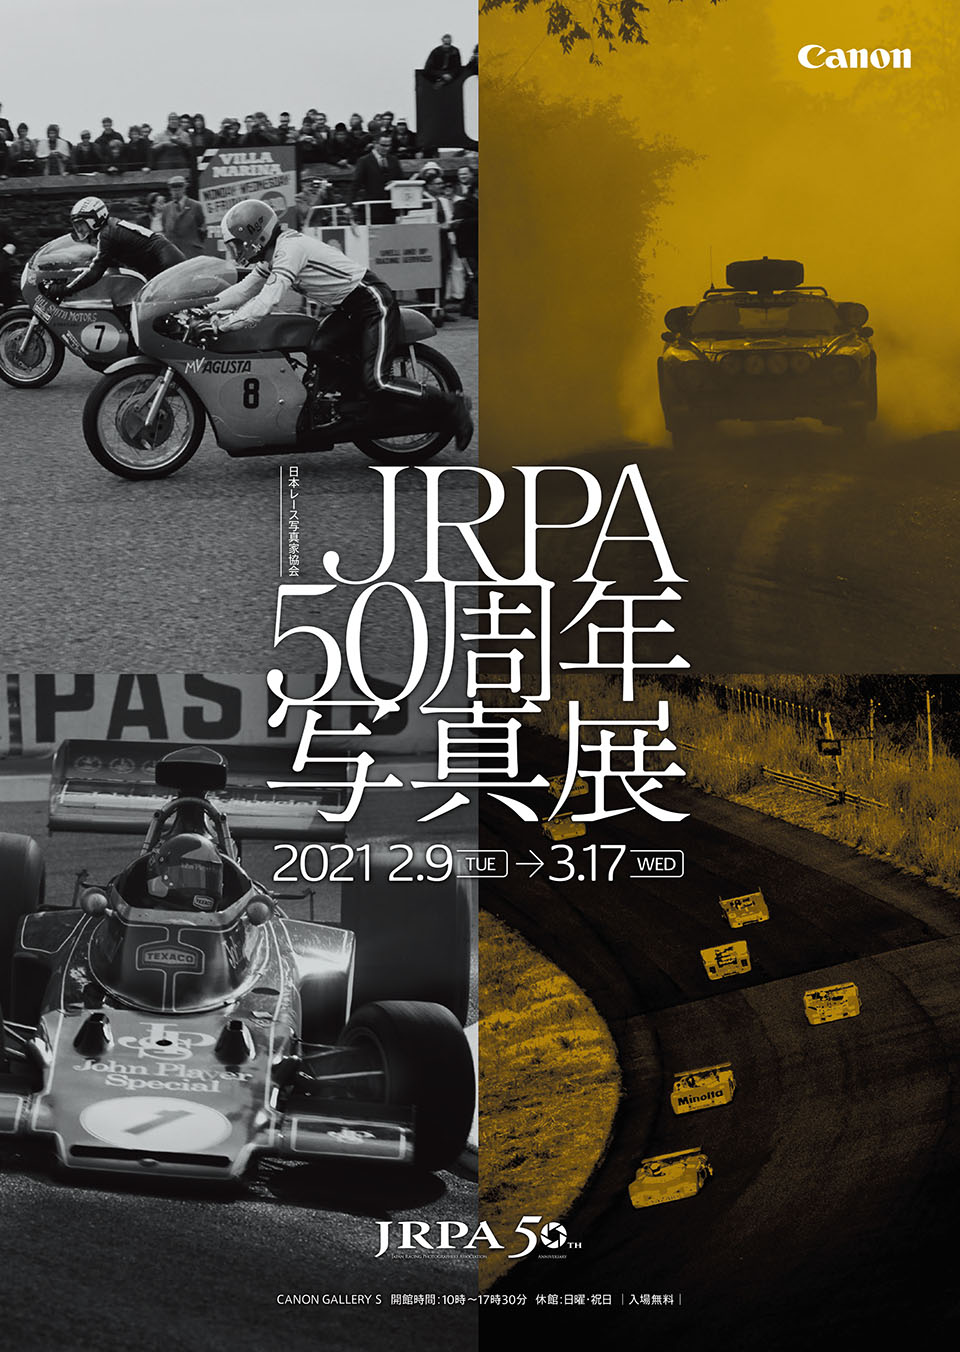 JRPA 50周年写真展 開催